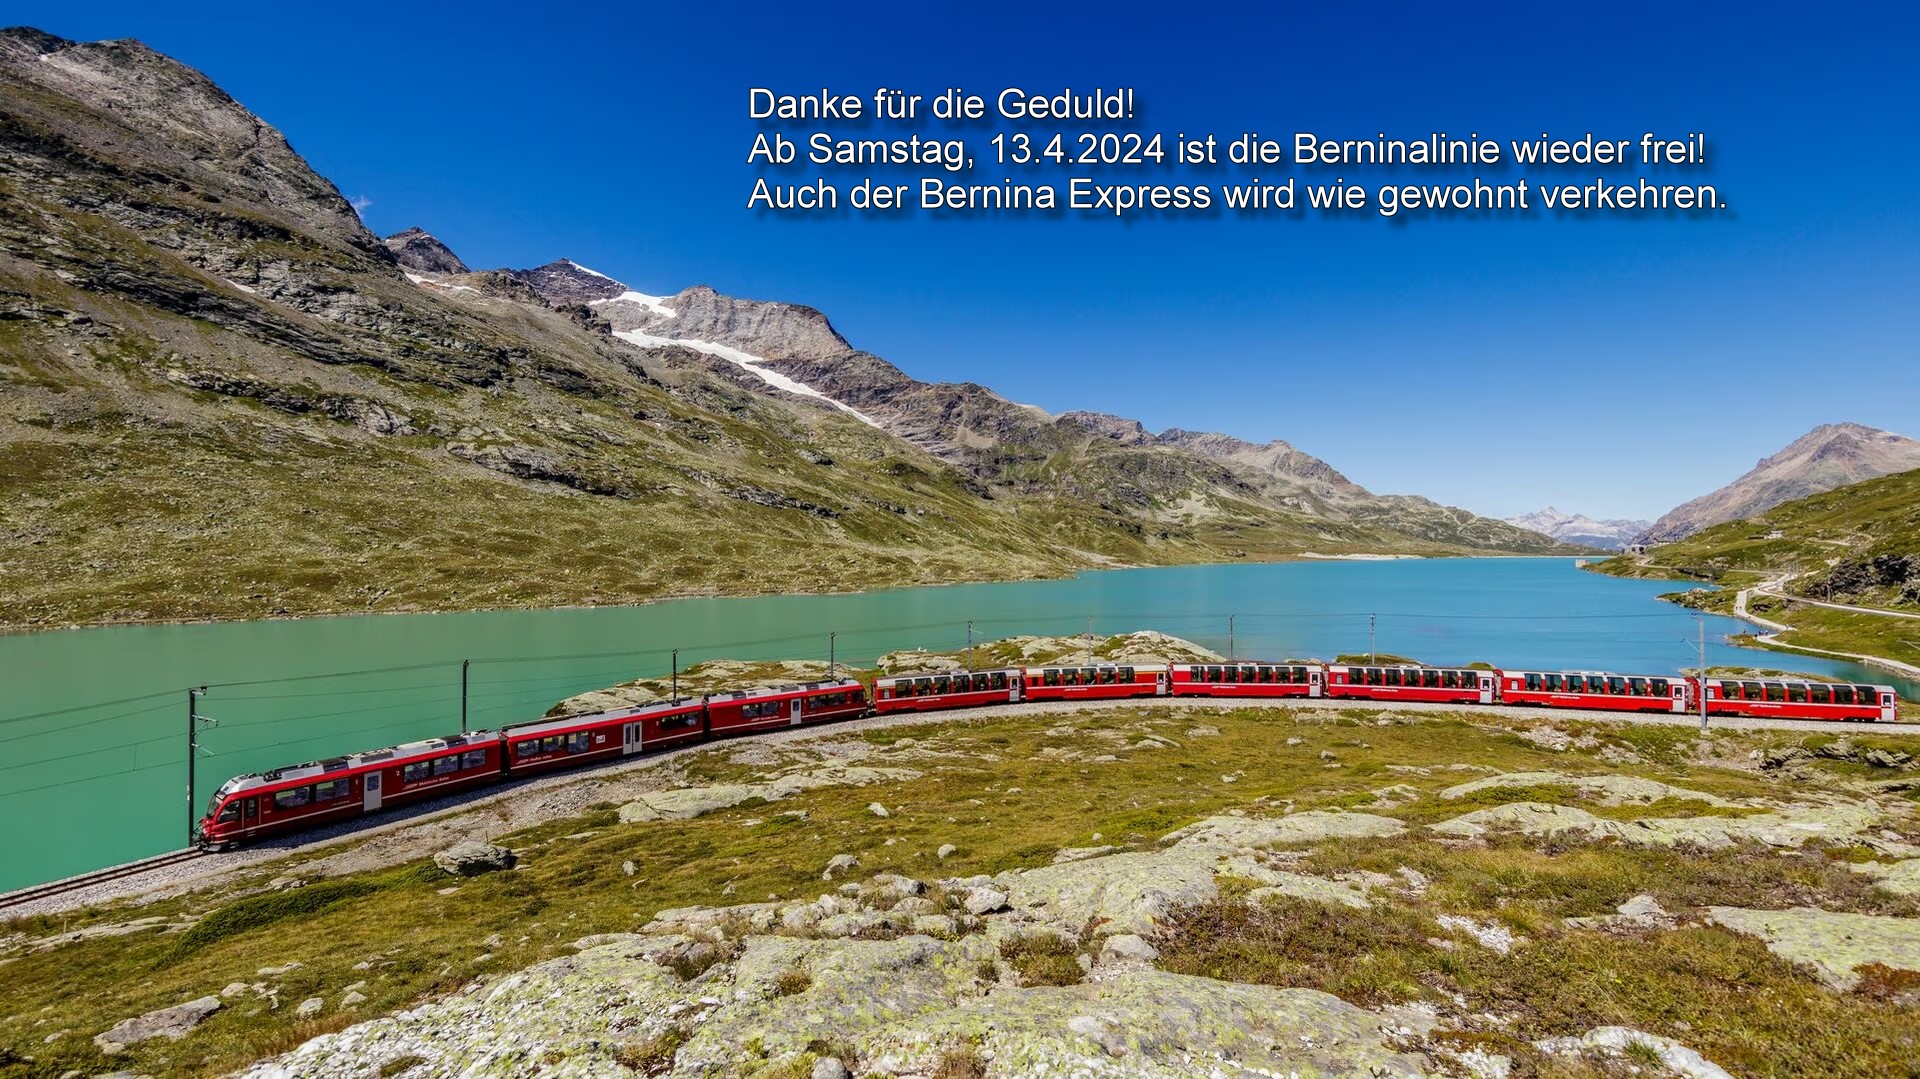 Bild von der RhB - Bernina Express am Lago Bianco. Ab Betriebsbeginn 13.04.2024 ist die Strecke wieder frei!